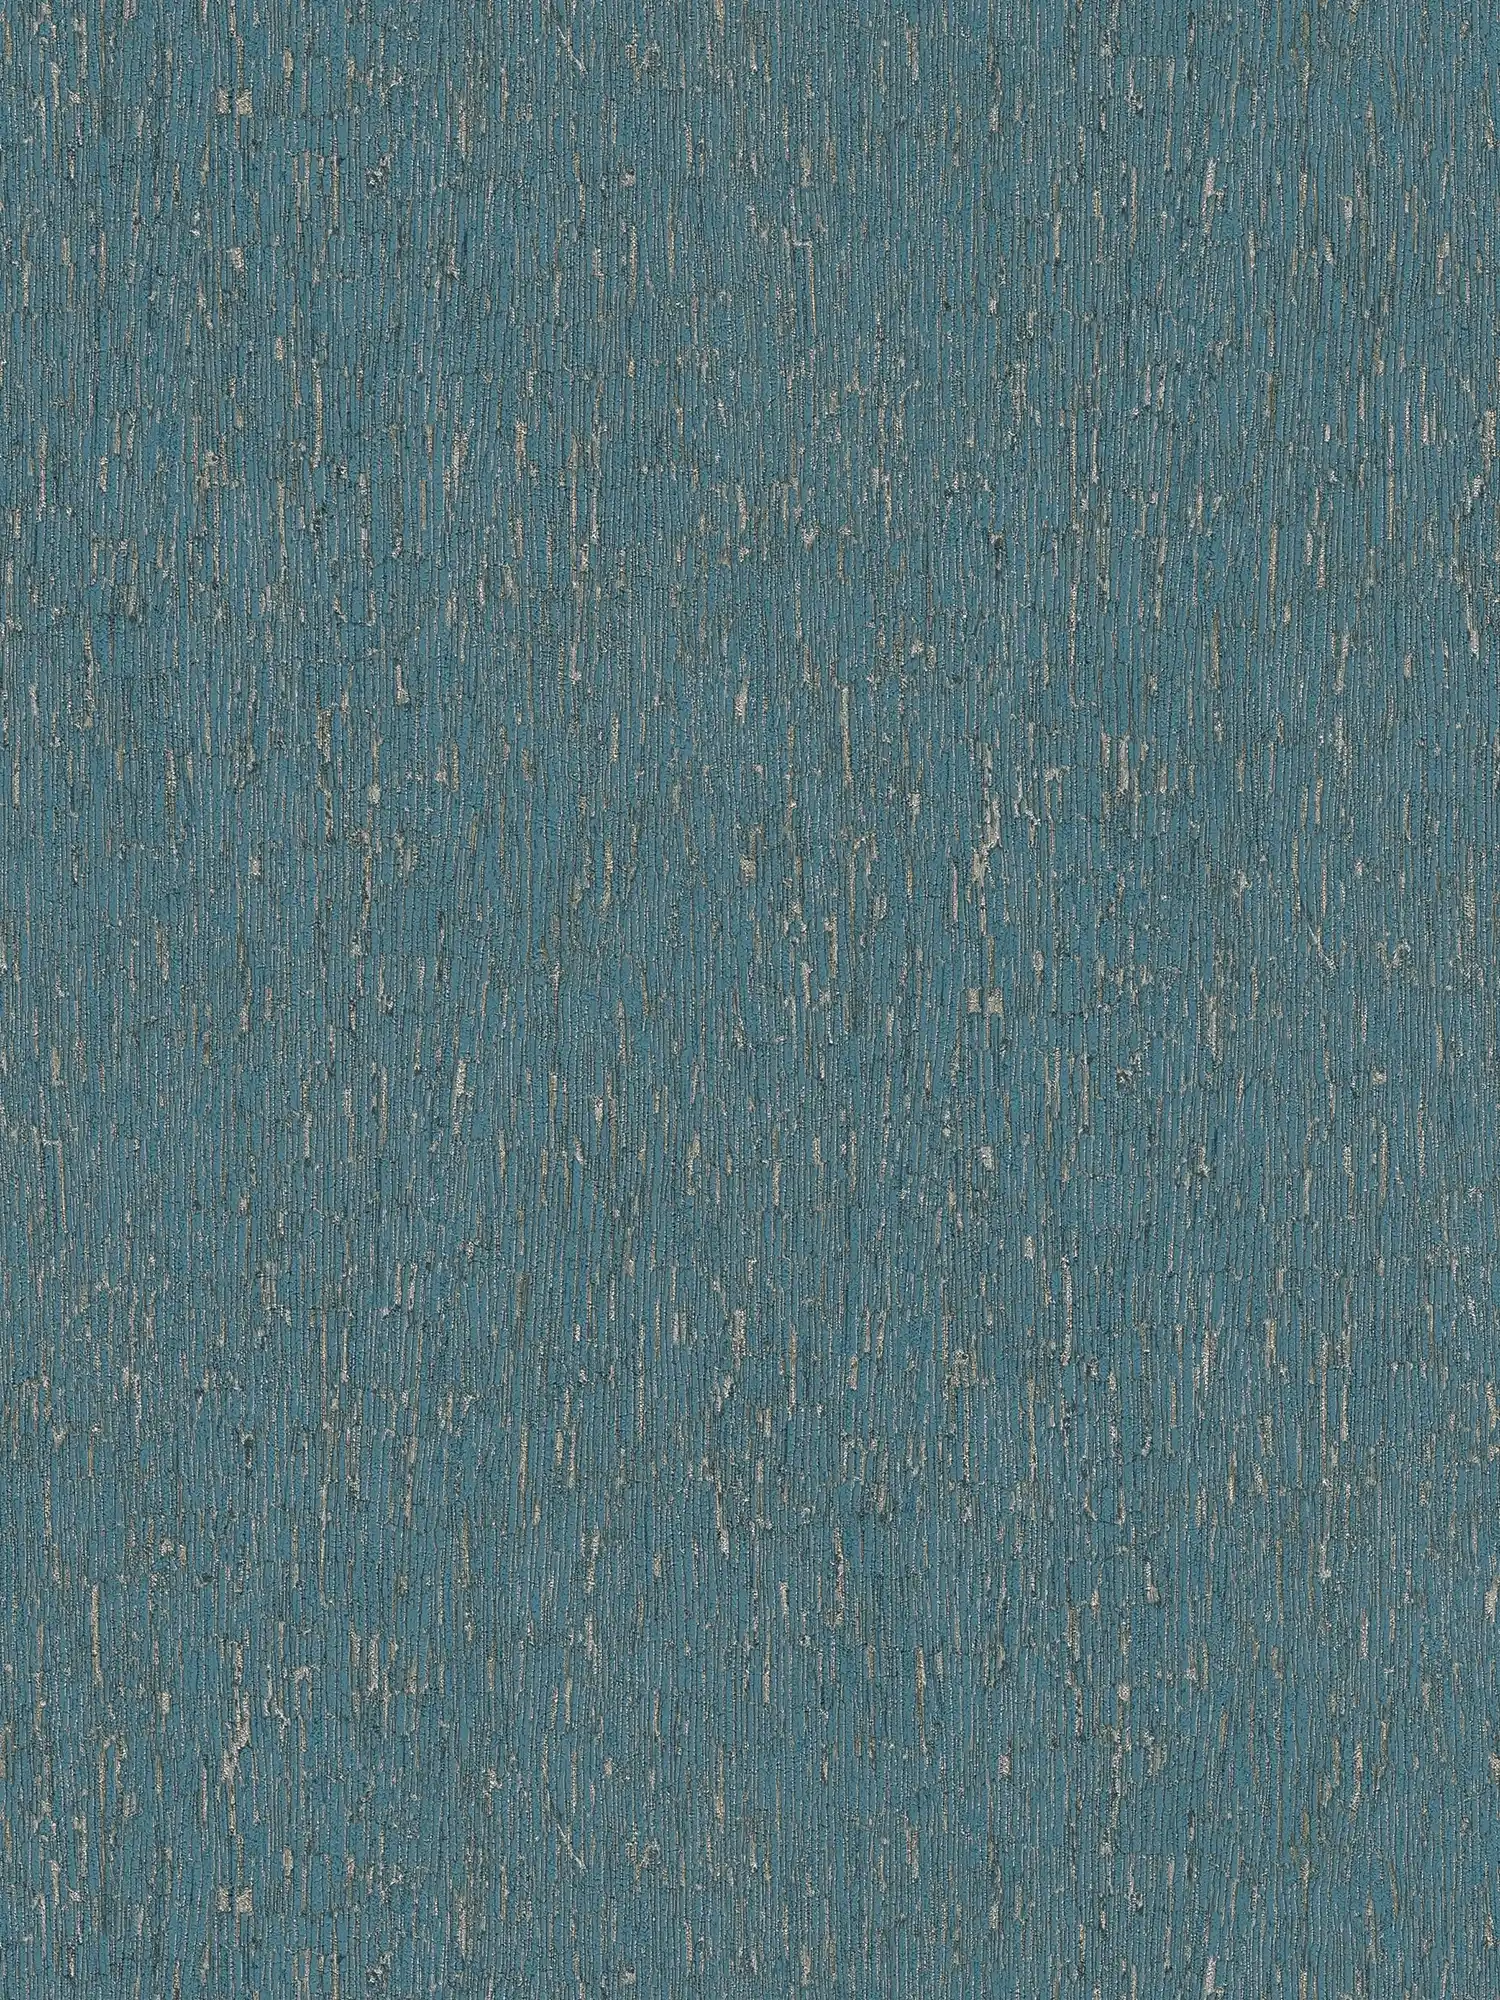 papier peint en papier intissé aspect plâtre avec des accents dorés - bleu, pétrole, argent
